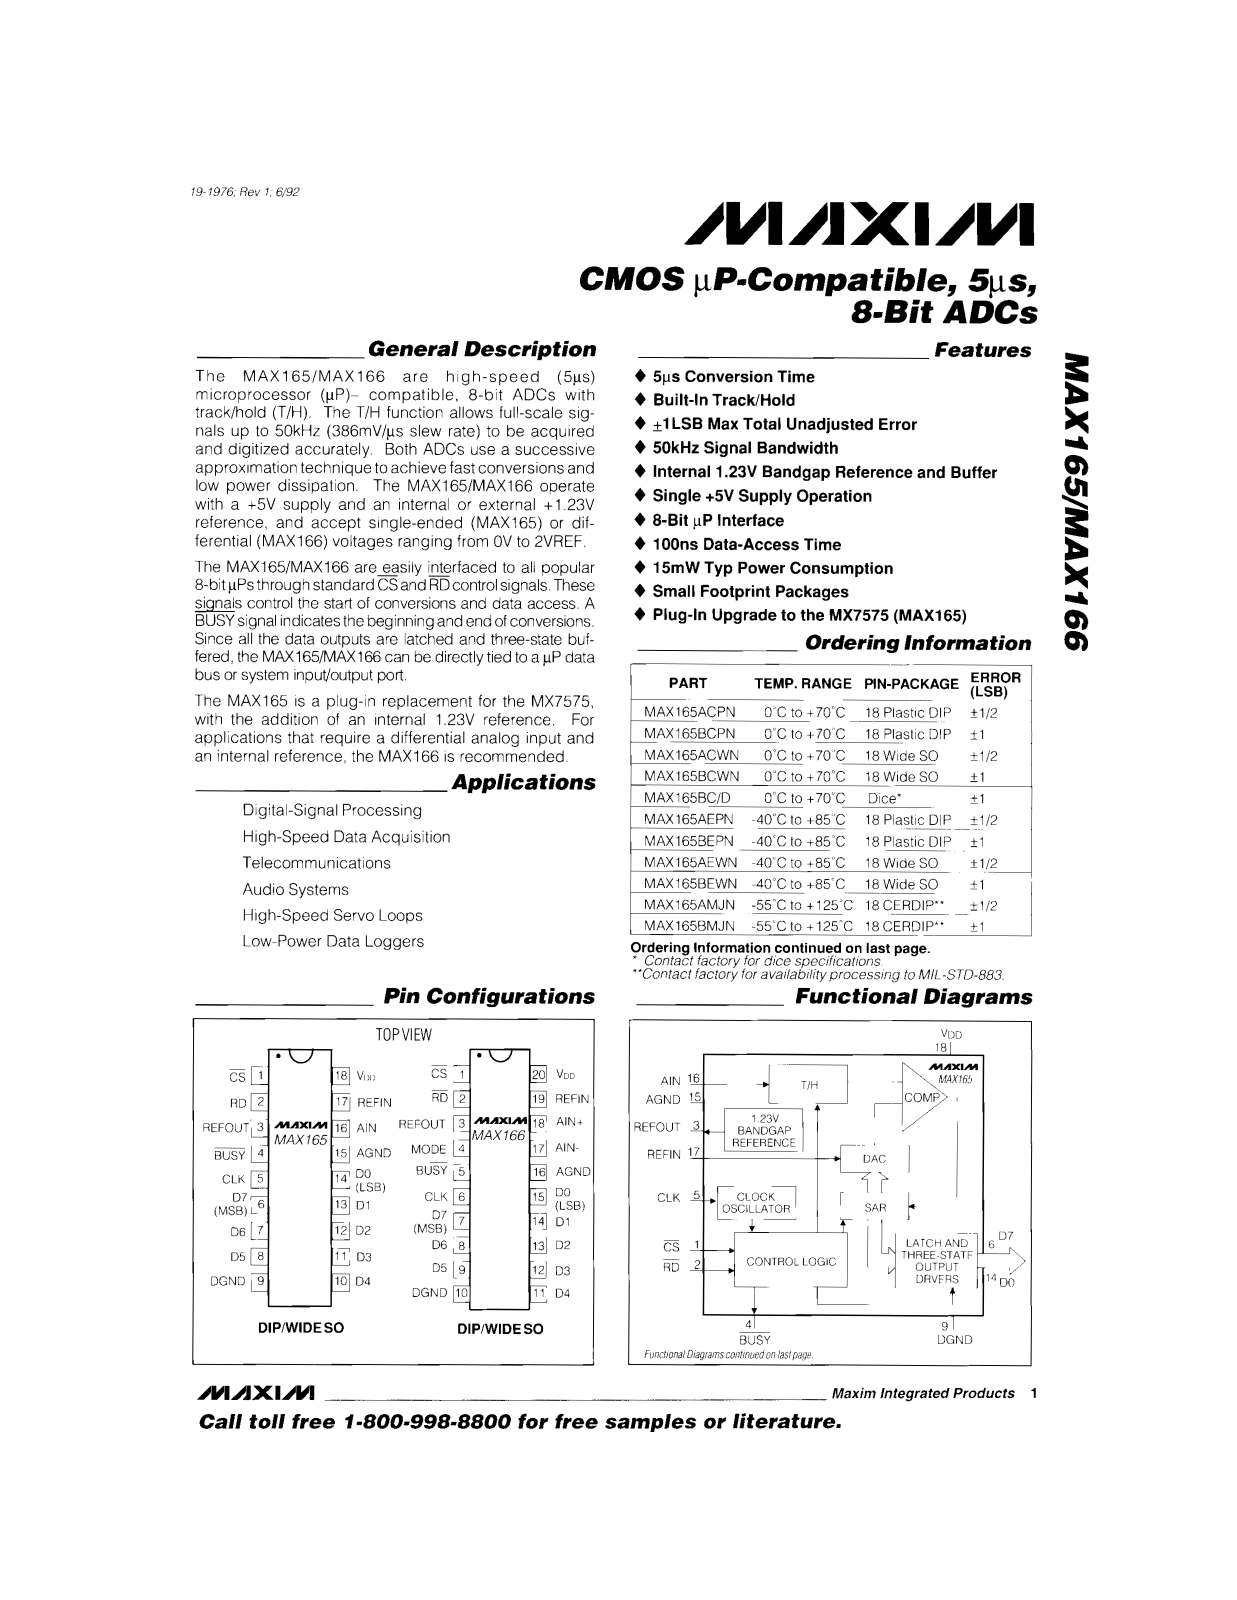 Maxim MAX166CEPP, MAX166CCWP, MAX166CCPP, MAX166BEWP, MAX166BEPP Datasheet